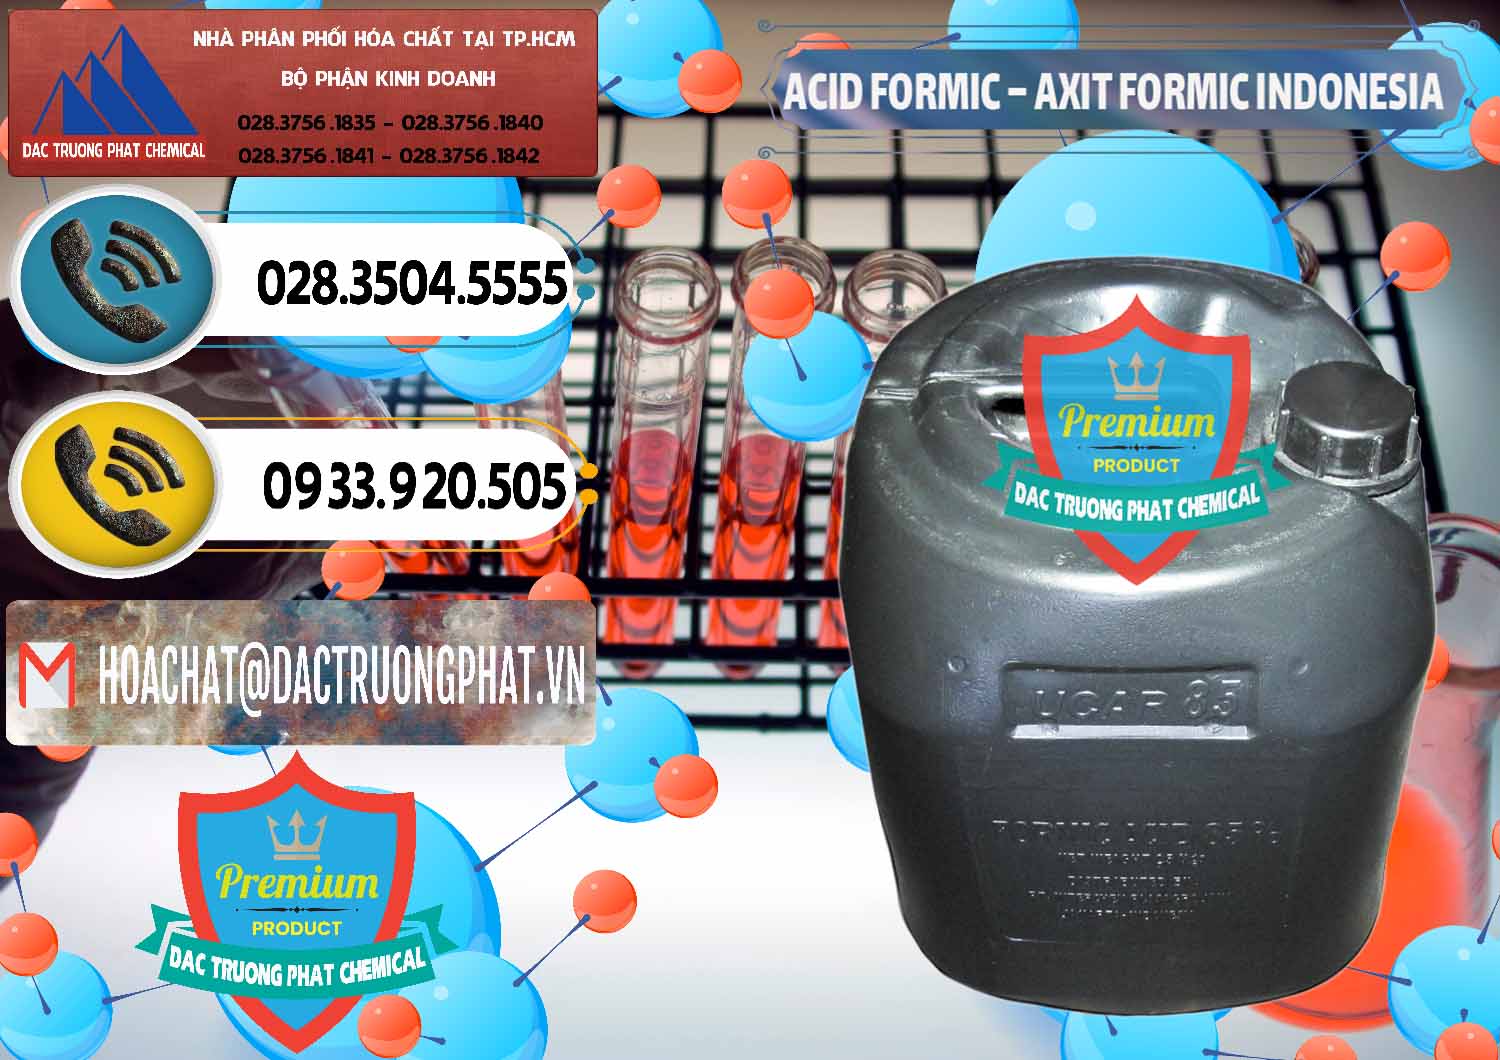 Đơn vị cung ứng & bán Acid Formic - Axit Formic Indonesia - 0026 - Nơi chuyên bán ( cung cấp ) hóa chất tại TP.HCM - hoachatdetnhuom.vn